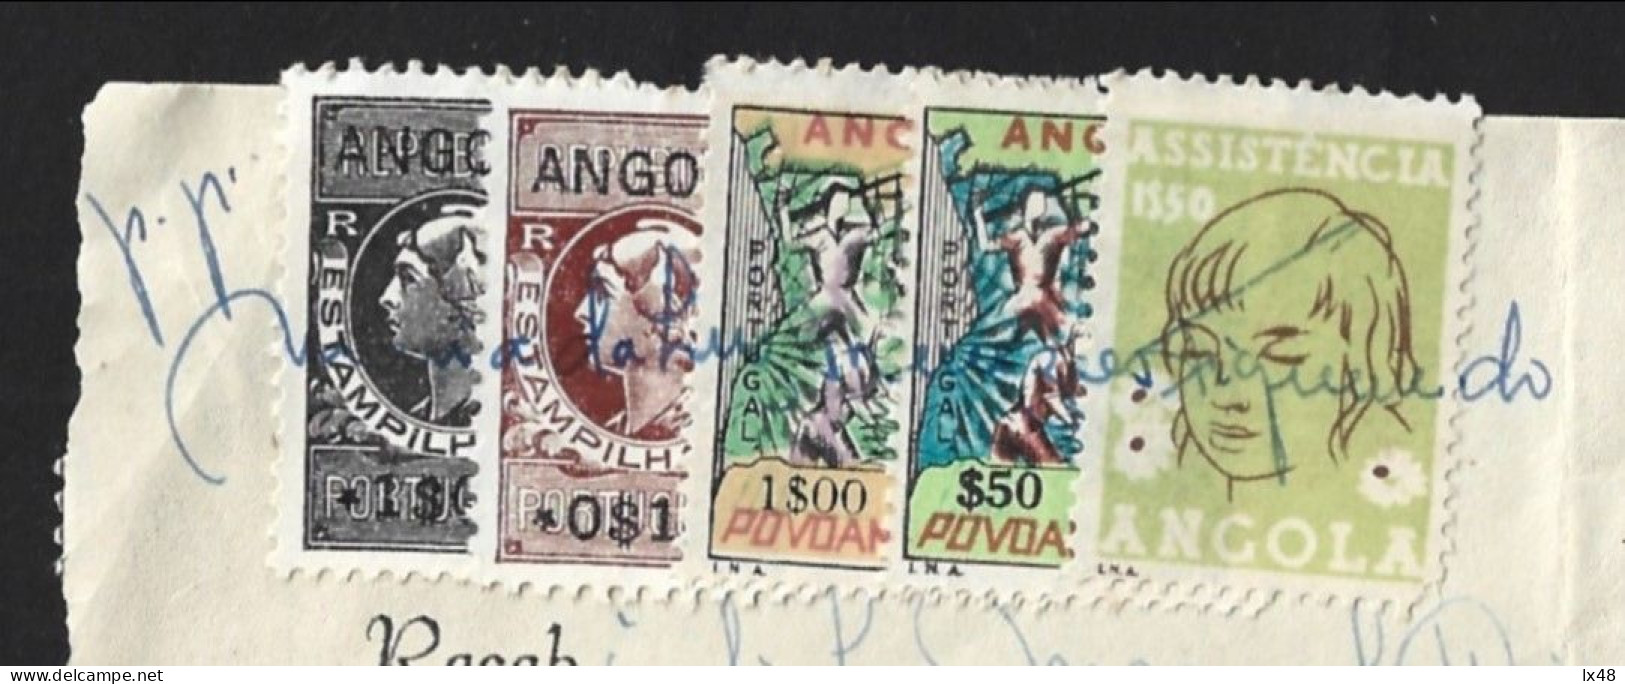 Recibo De Angola 1971 Com Stamps Assistência E Povoamento Utilizados Como Estampilha Fiscal. Angola Receipt From 1971 Wi - Brieven En Documenten